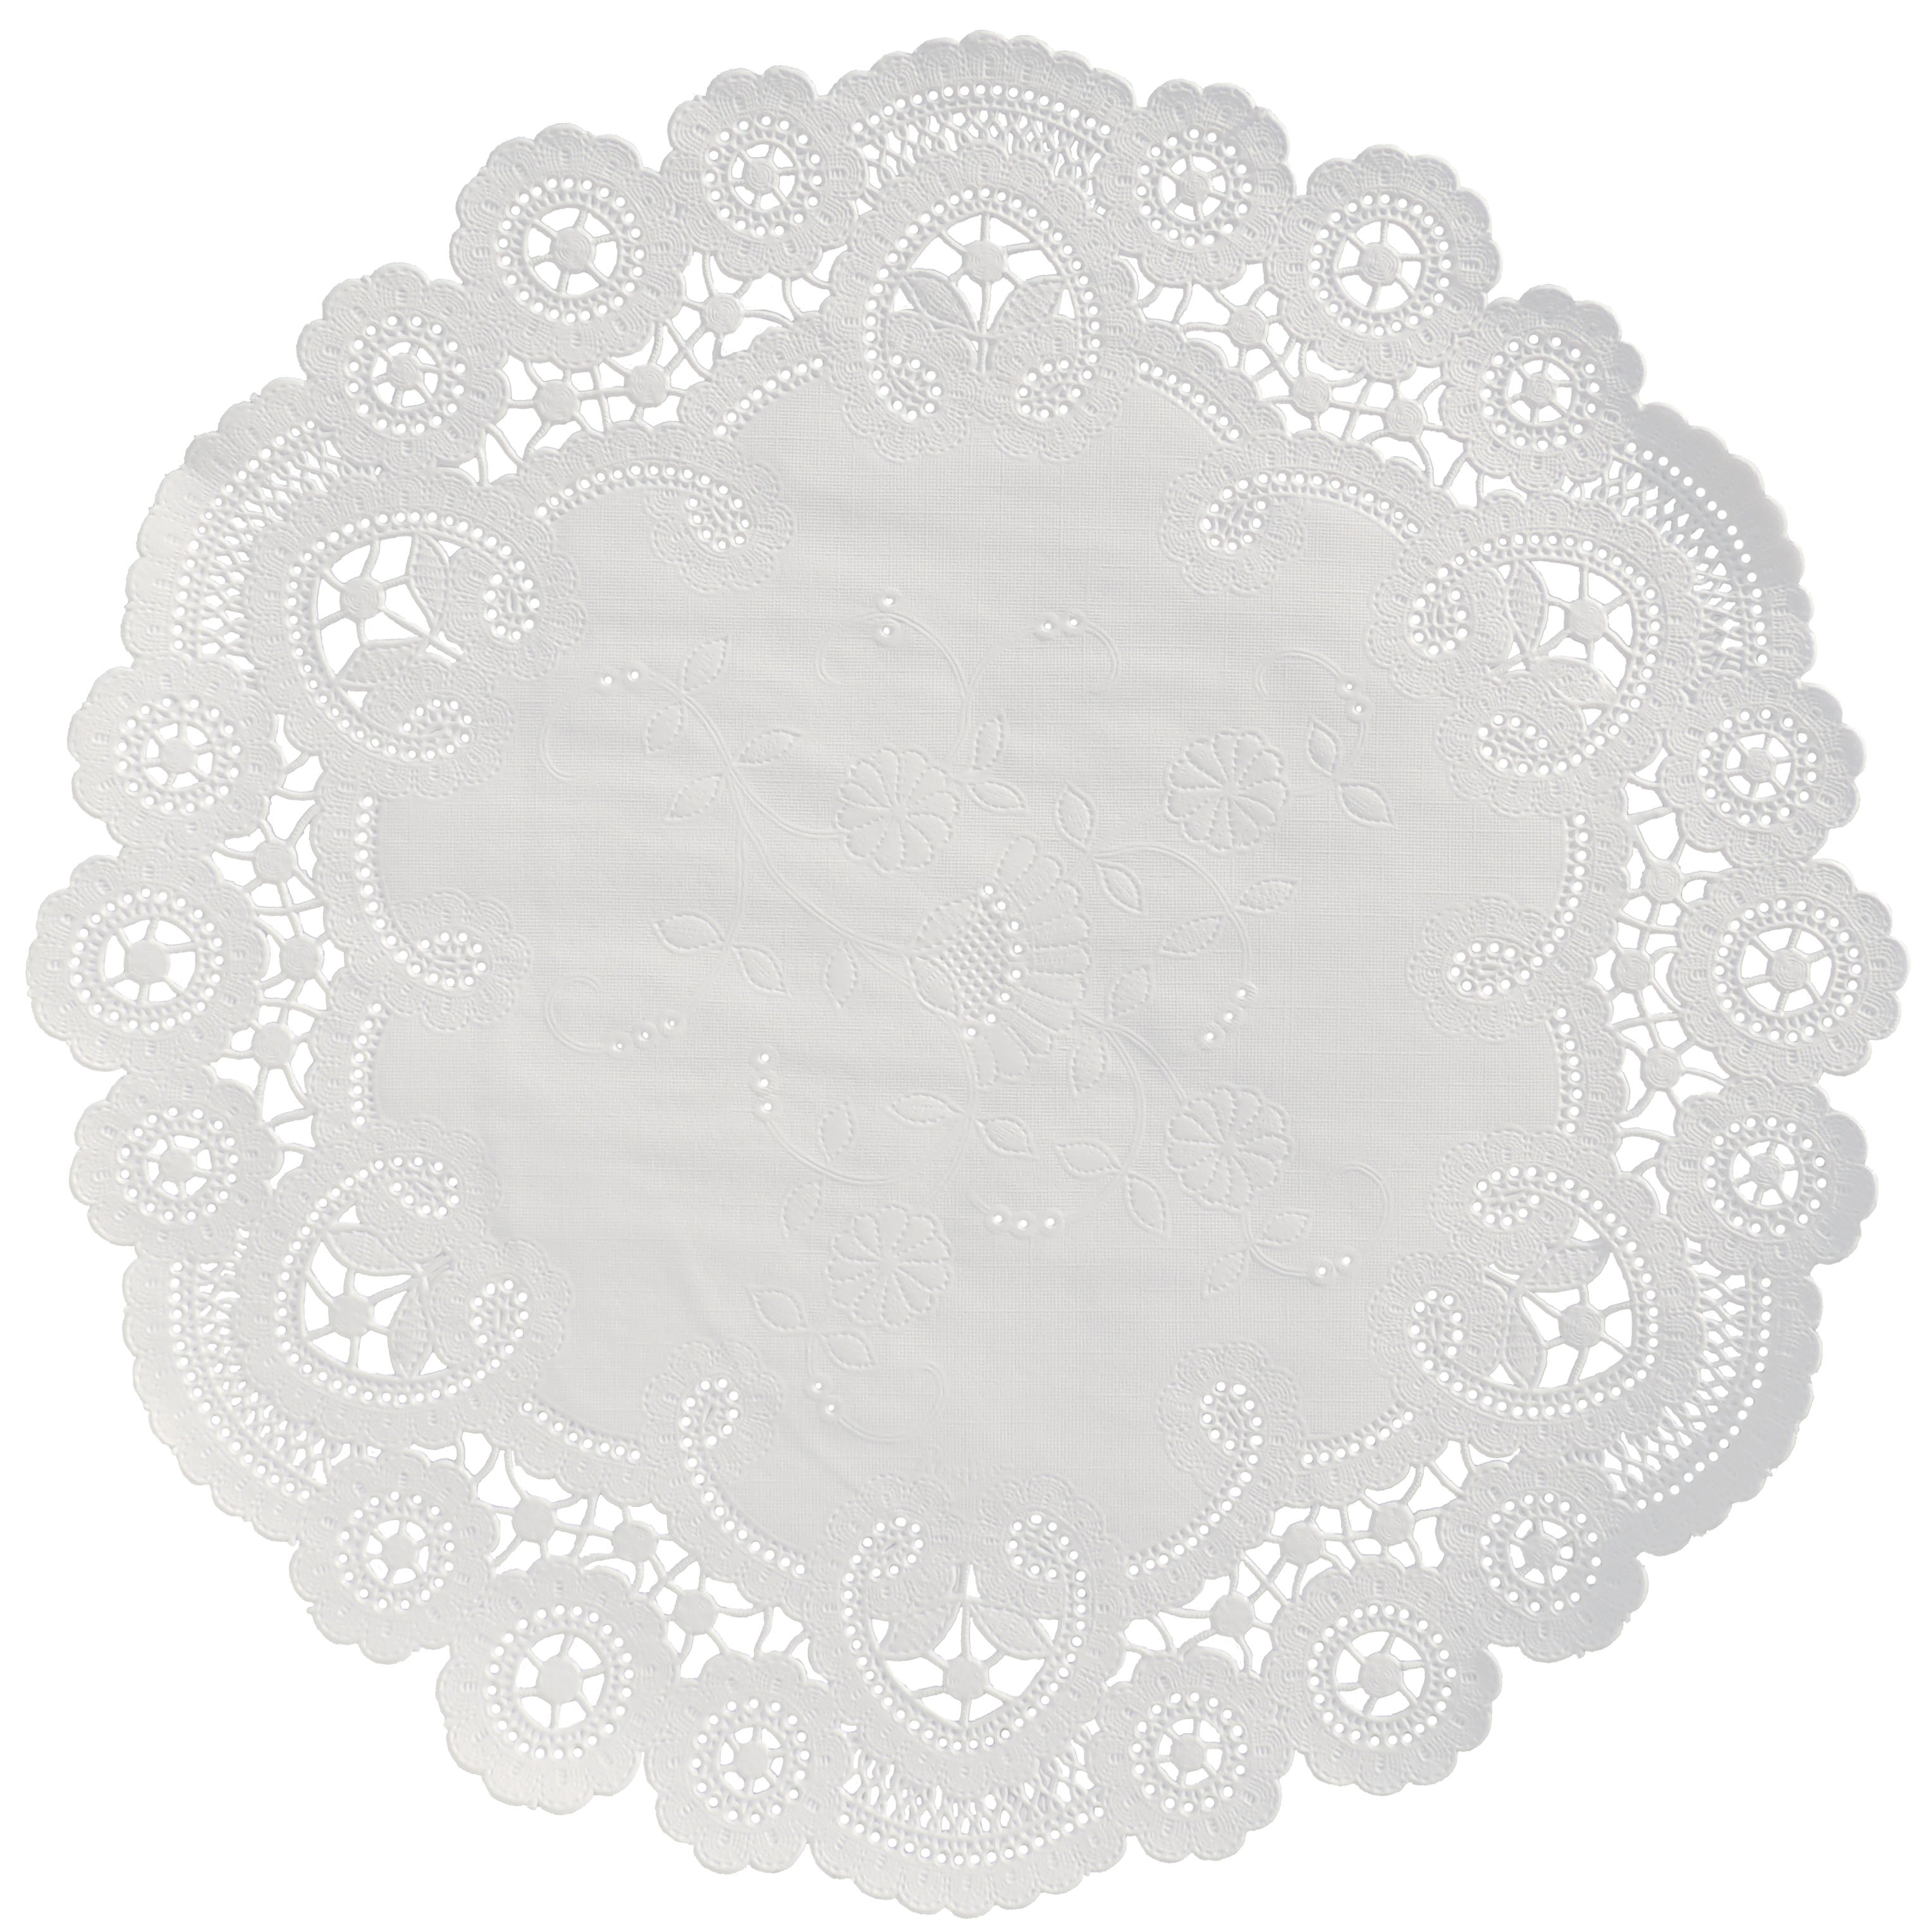 16 Lace Doily White Flower European Lace – Galleria di Giovanni